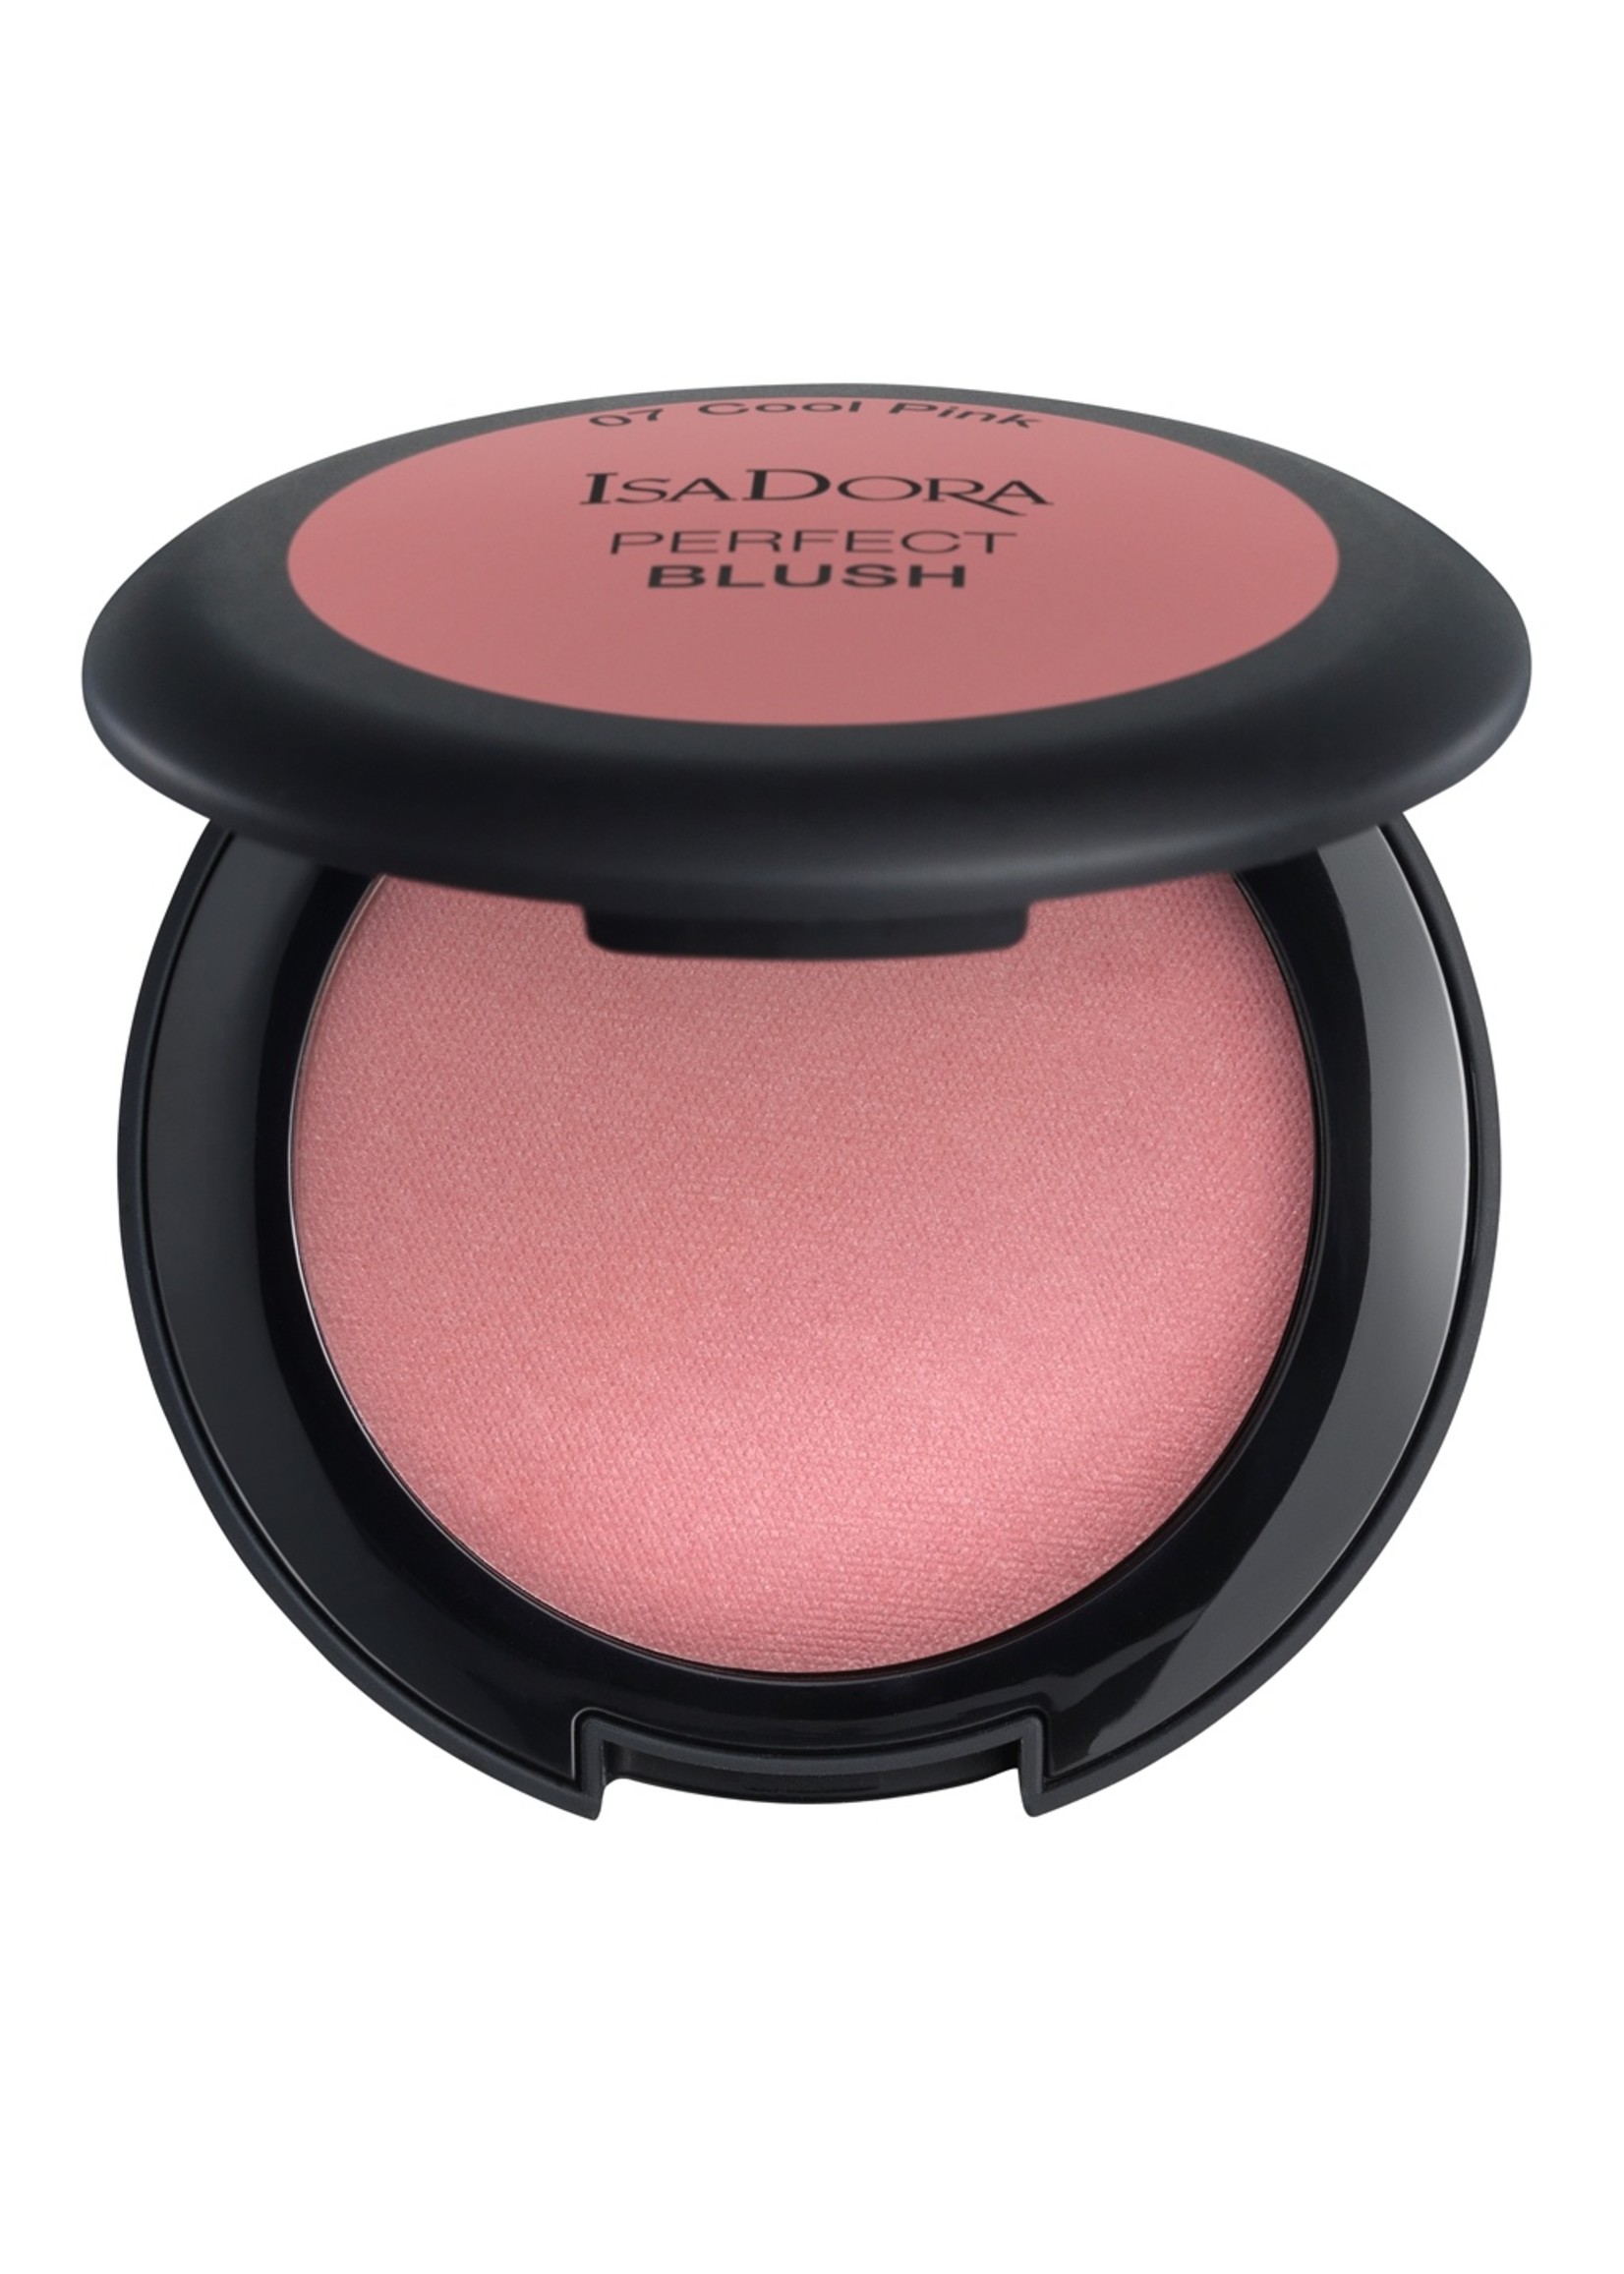 Isadora Make Up  Cool Pink N°07 -  Perfect Blush  - Isadora